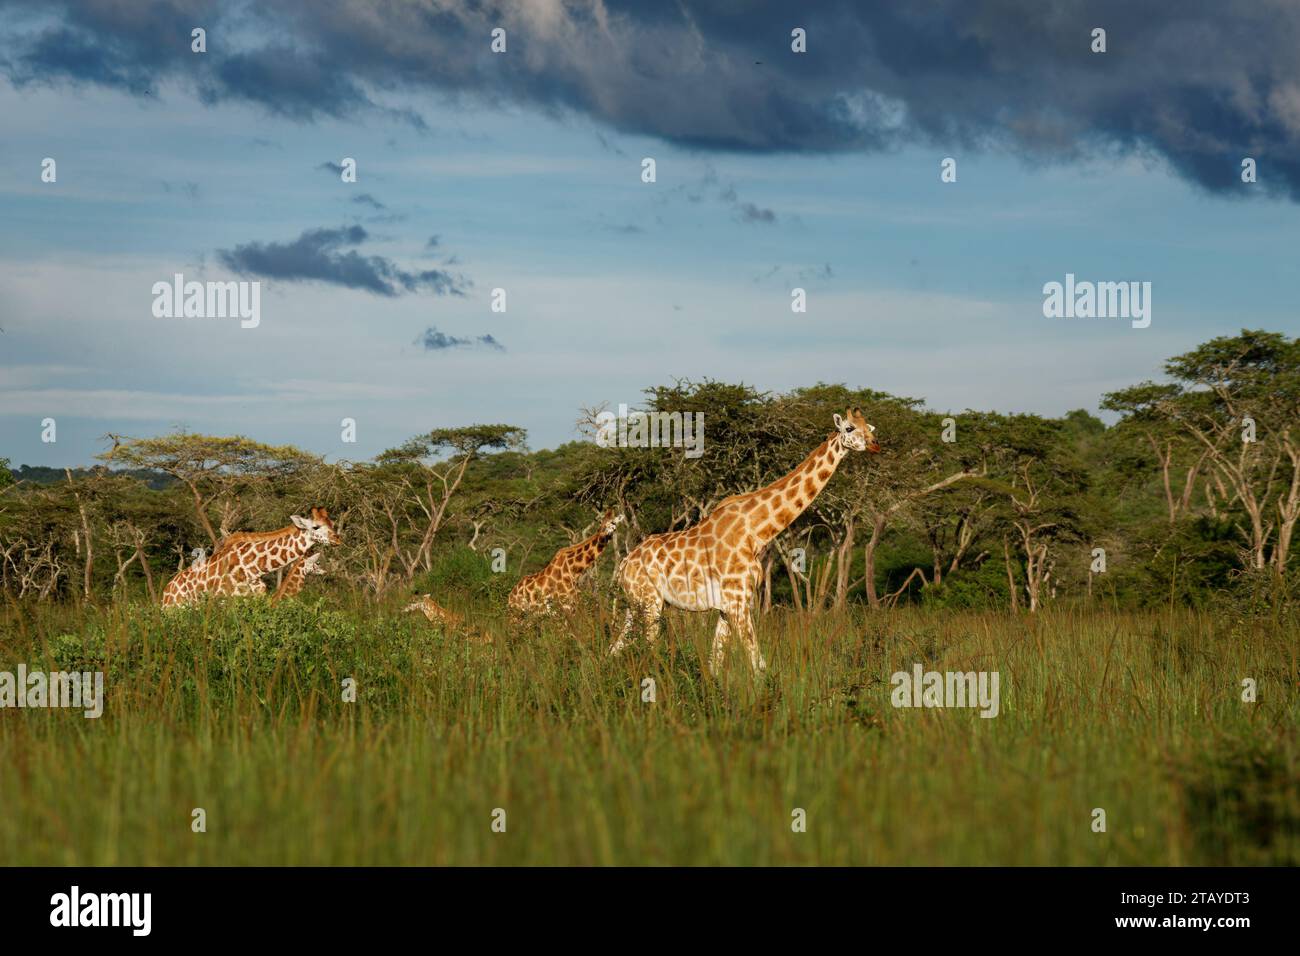 Girafe de Rothschild - Giraffa camelopardalis rothschildi sous-espèce de girafe du Nord, également Baringo ou Nubian ou comme girafe ougandaise, portra Banque D'Images